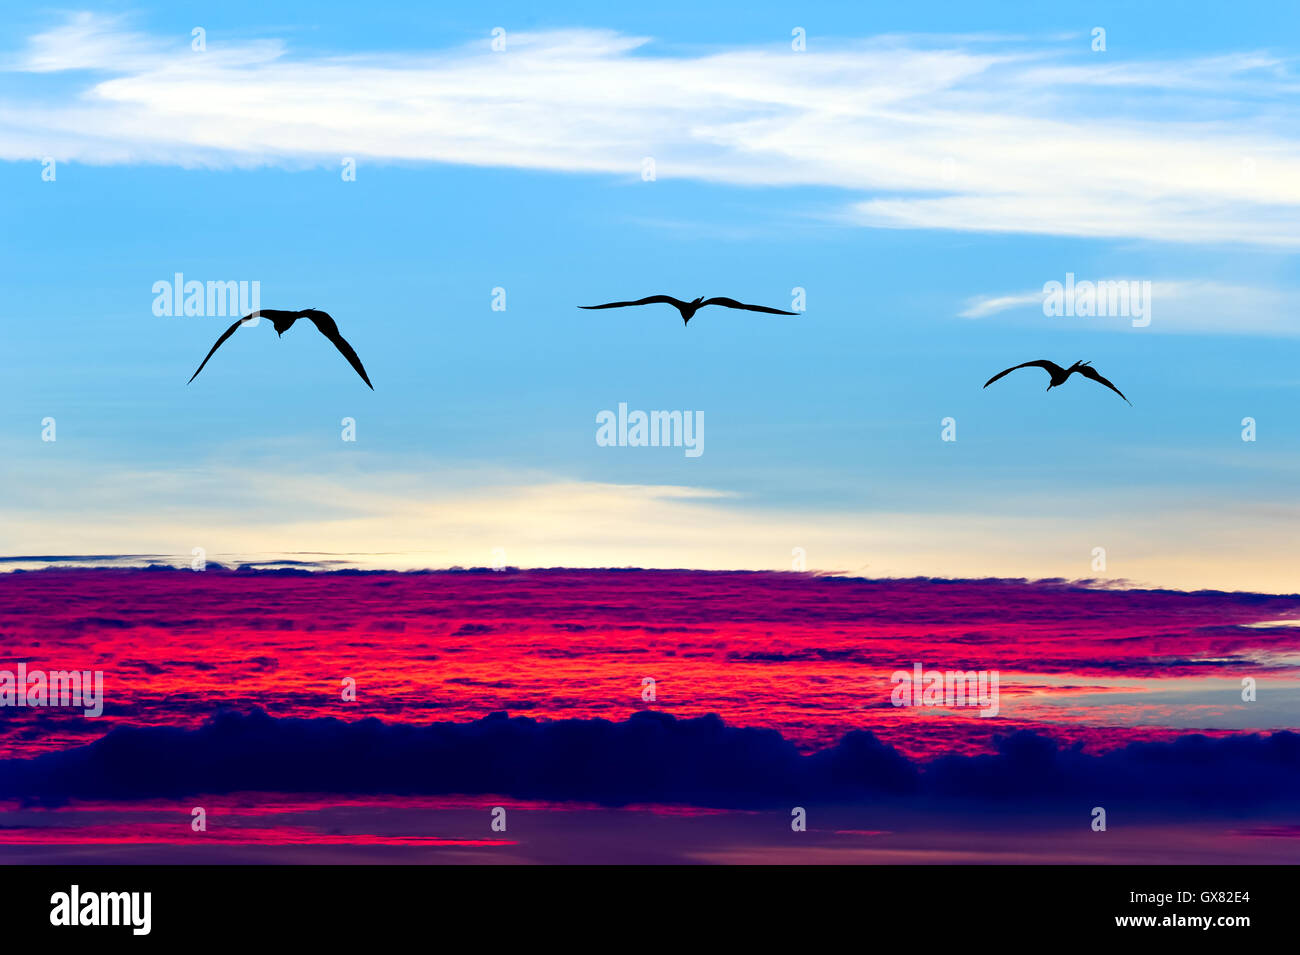 Silhouettes d'oiseaux est de trois oiseaux qui volent avec des ailes déployées sur une flambée surréaliste ethereal blue sky cloudscape. Banque D'Images